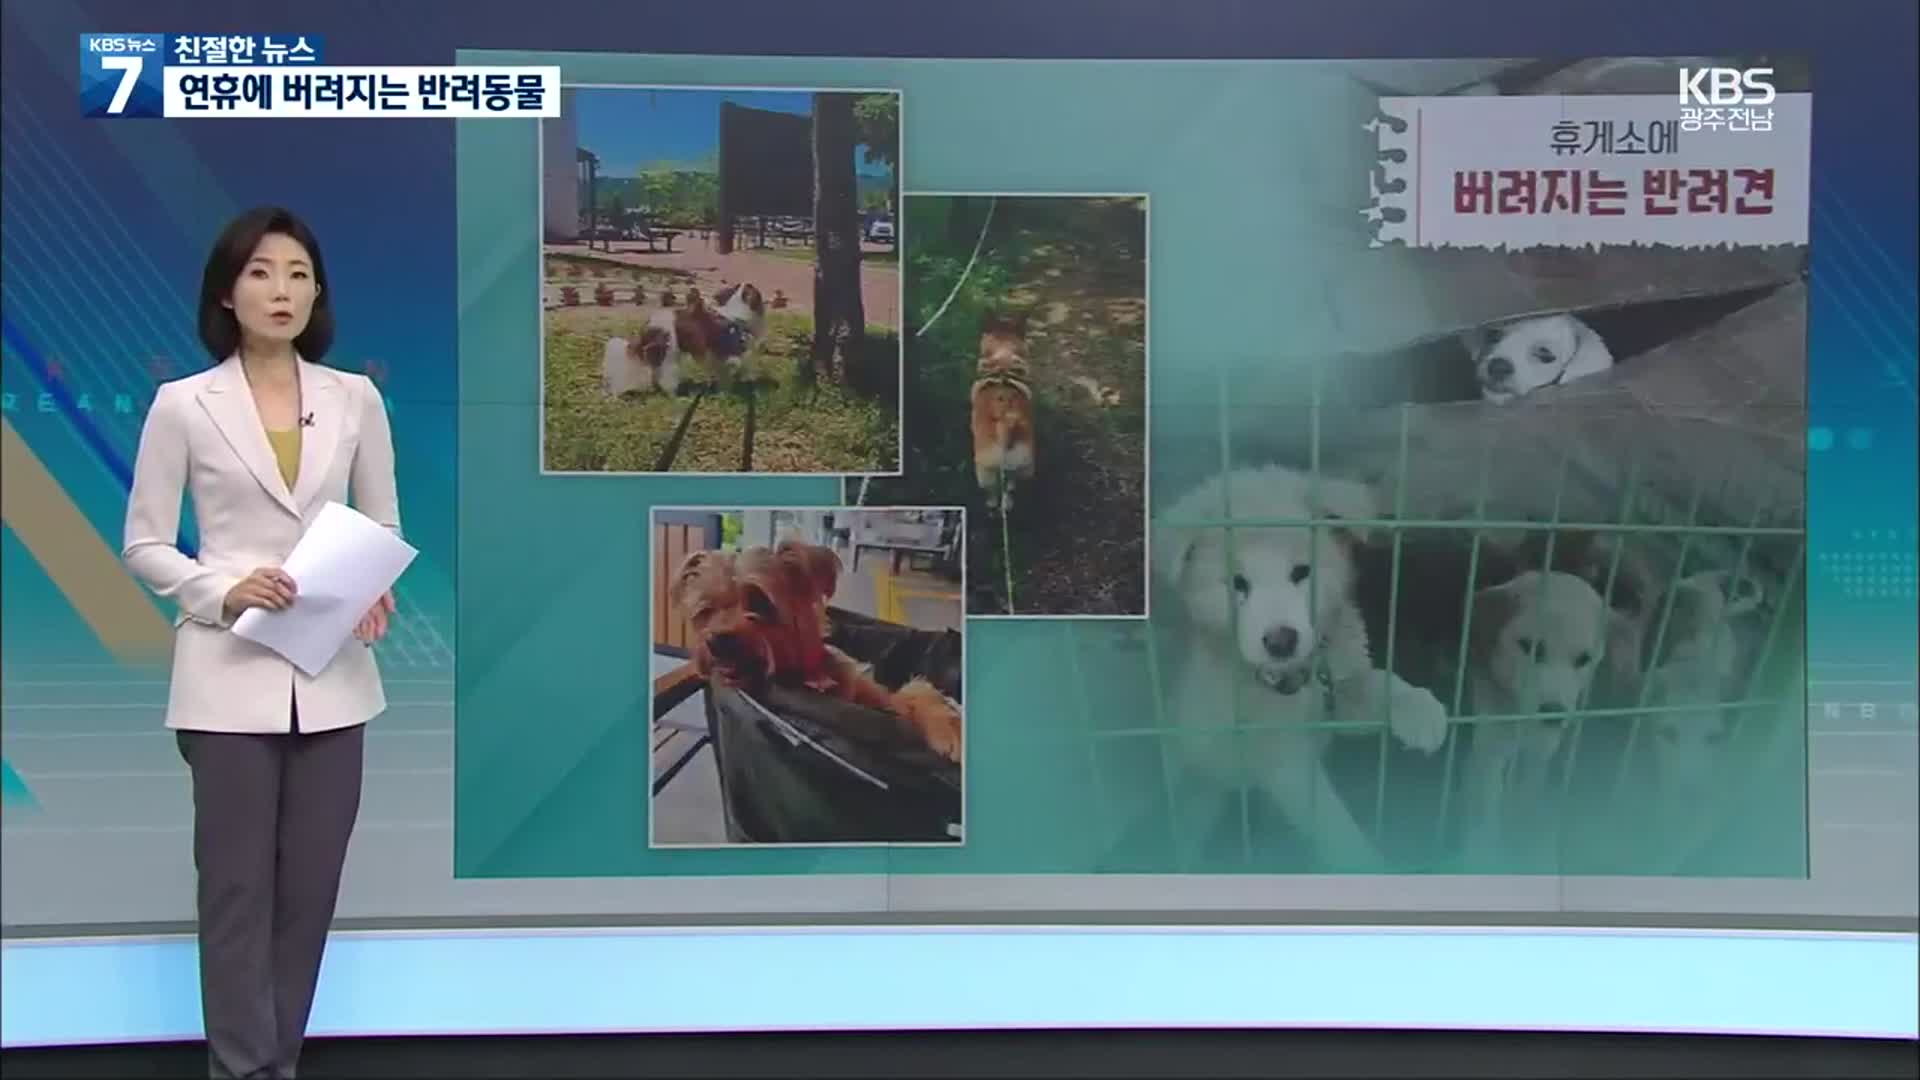 [친절한 뉴스] 추석 직전 2천 마리 버려졌다…연휴 두려운 동물들